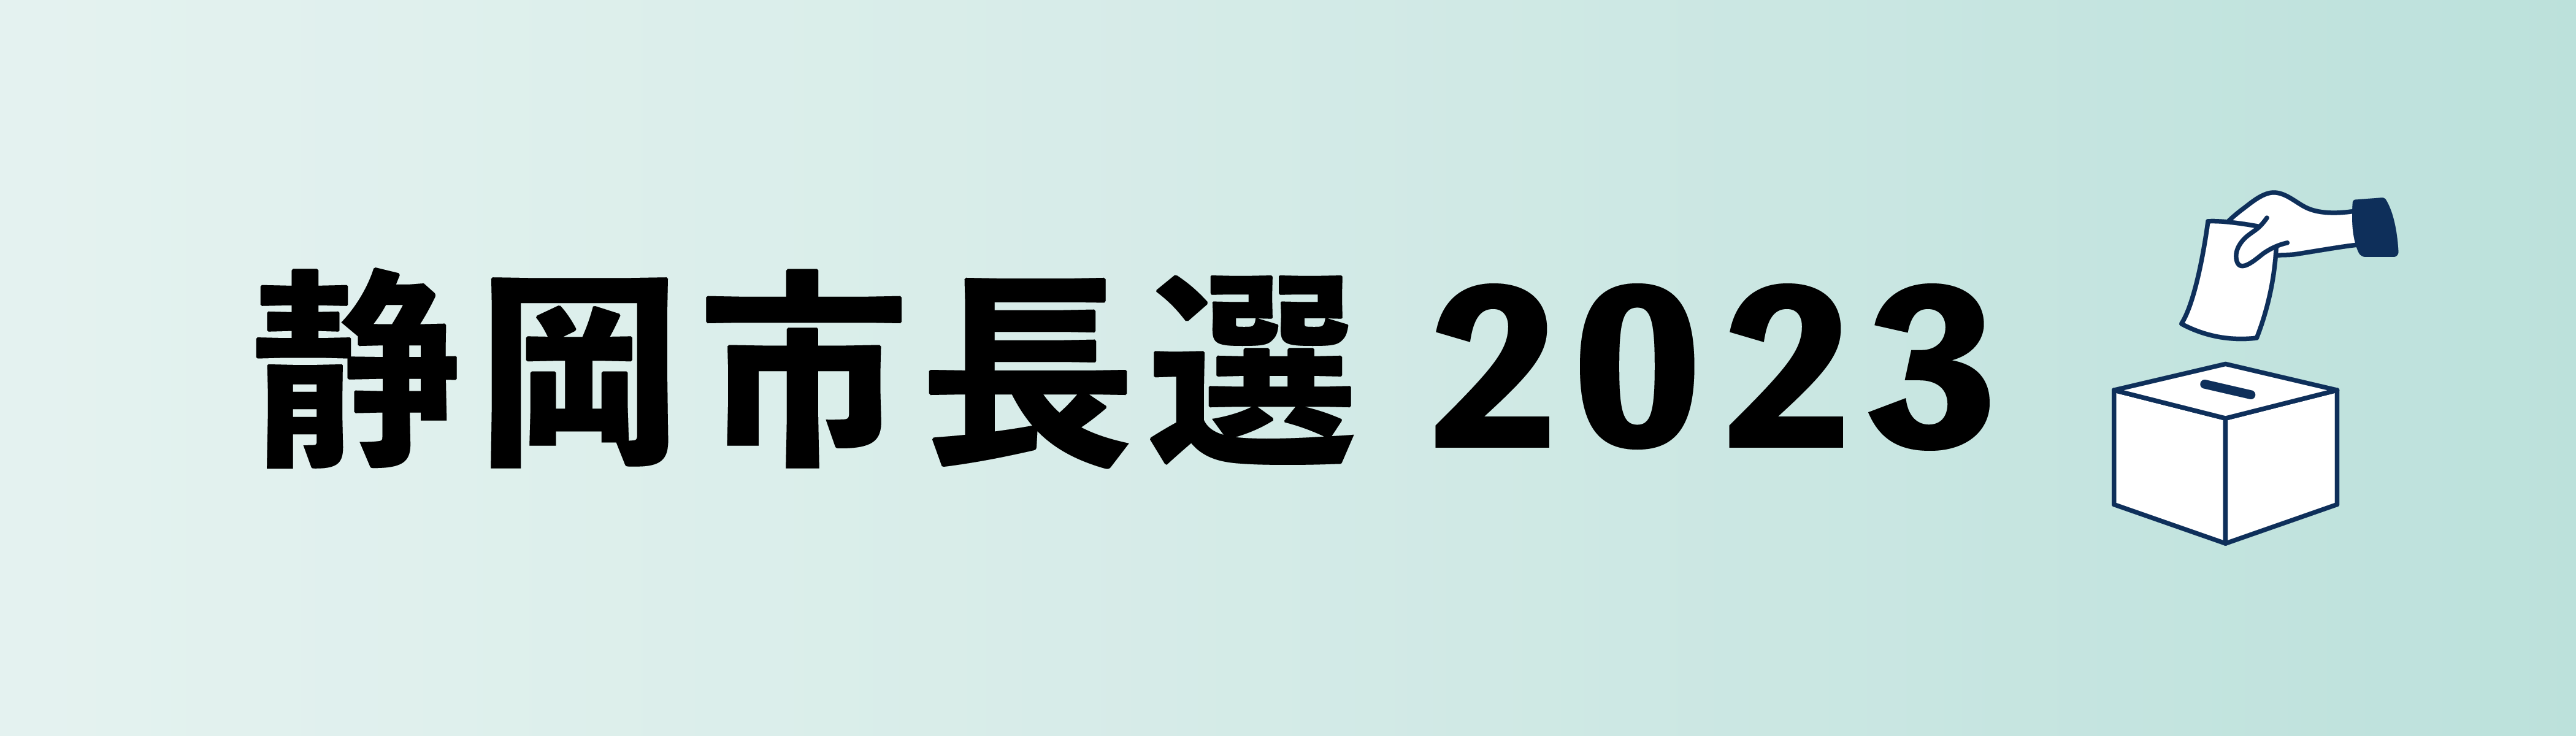 静岡市長選2023